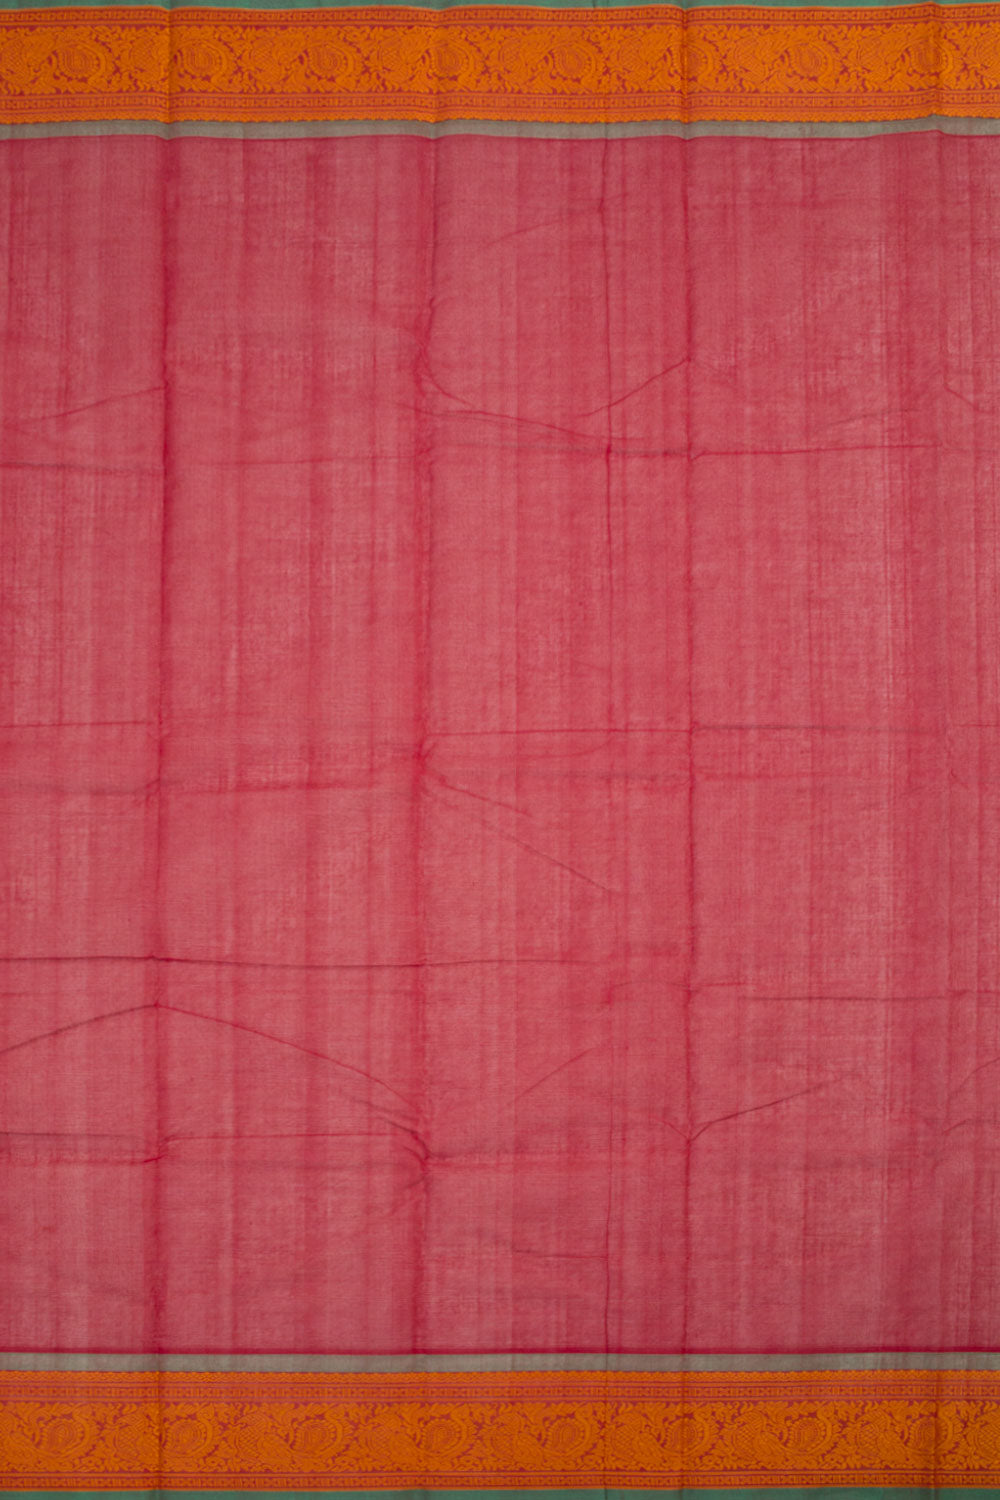 Cardinal Red Handloom Kanchi Cotton Saree 10060870